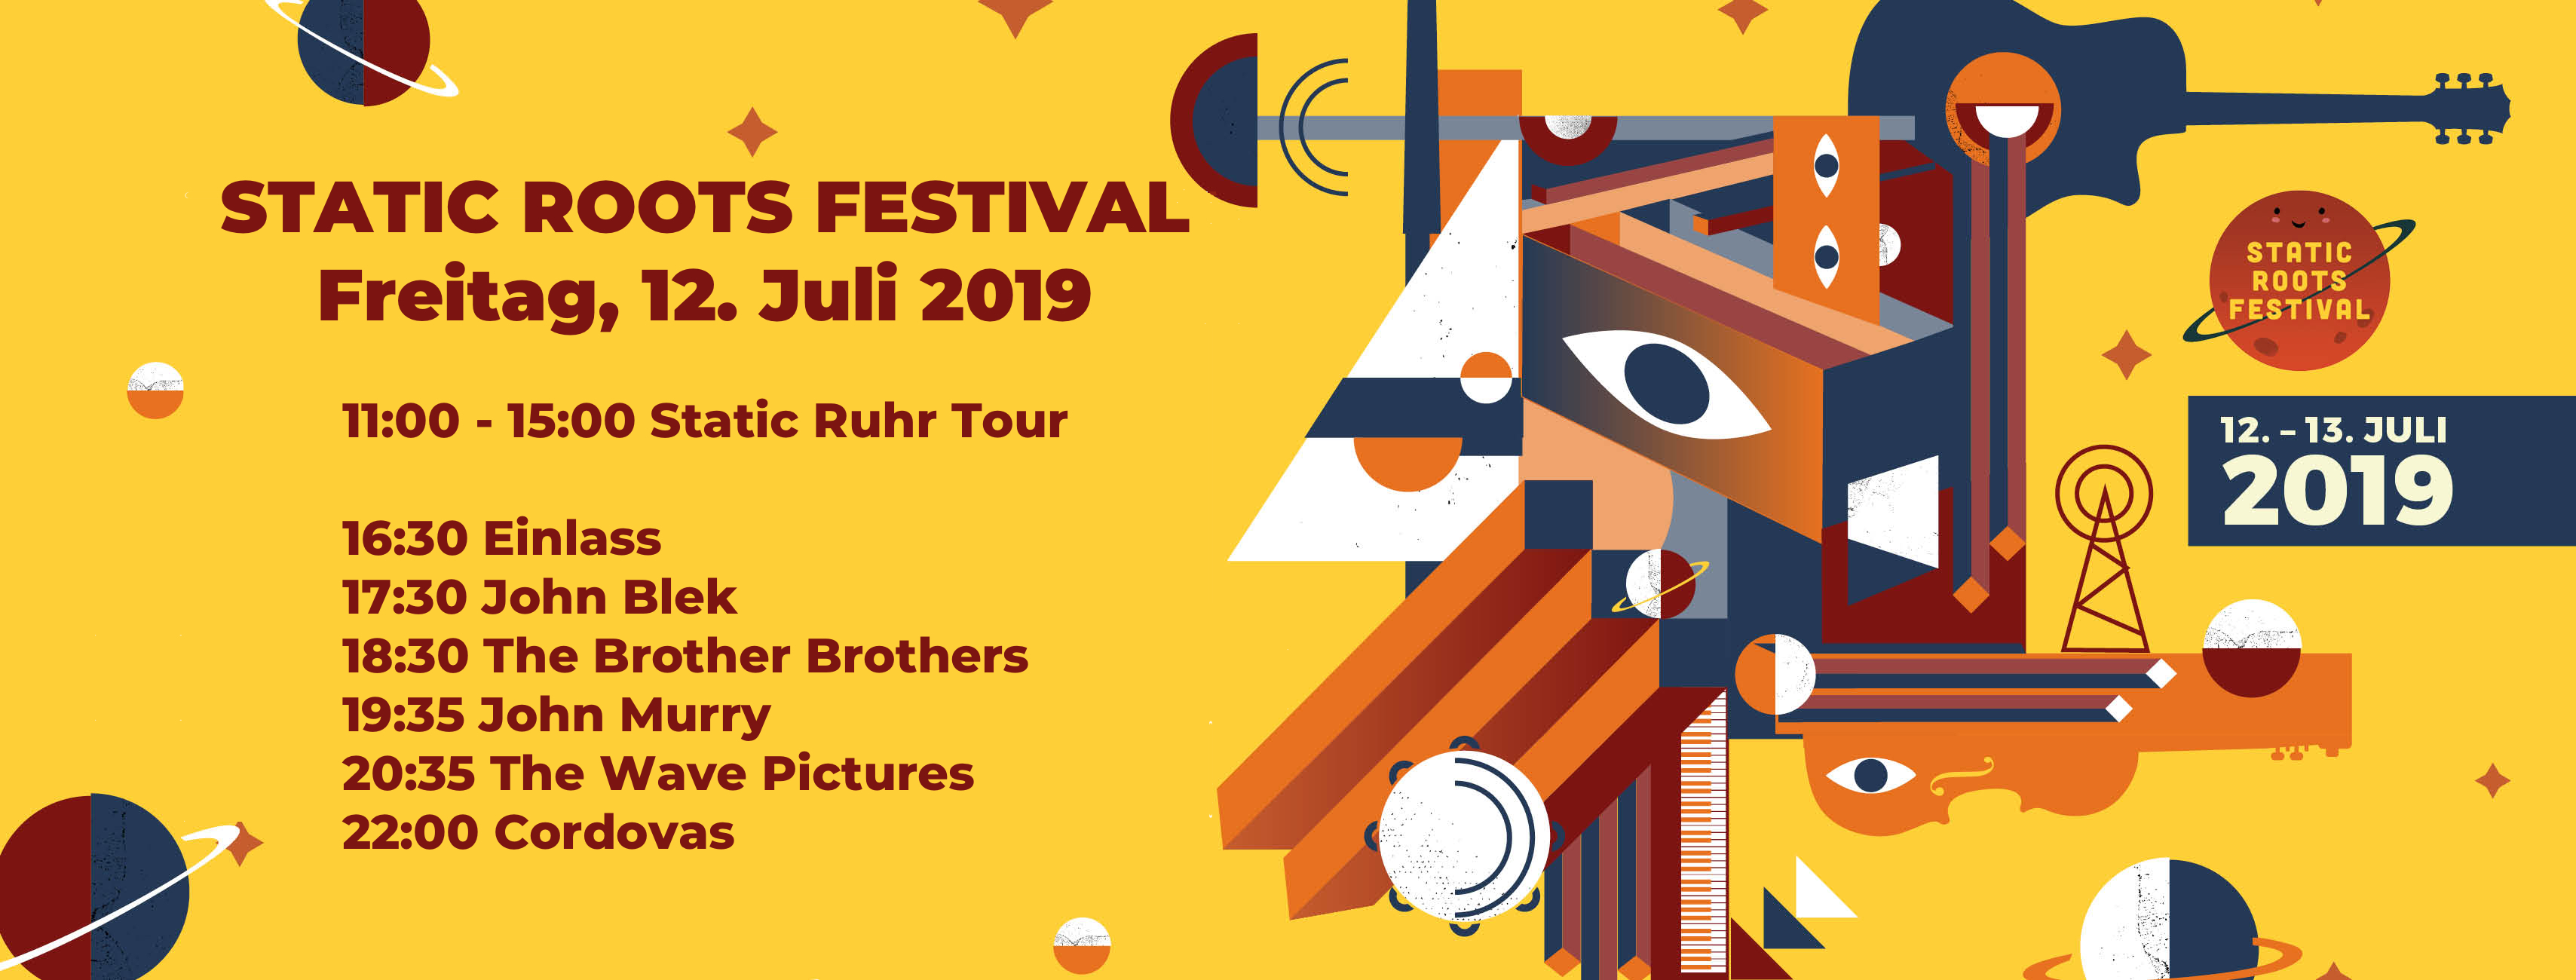 Zeitplan für das Static Roots Festival 2019 / Freitag, 12.07.2019